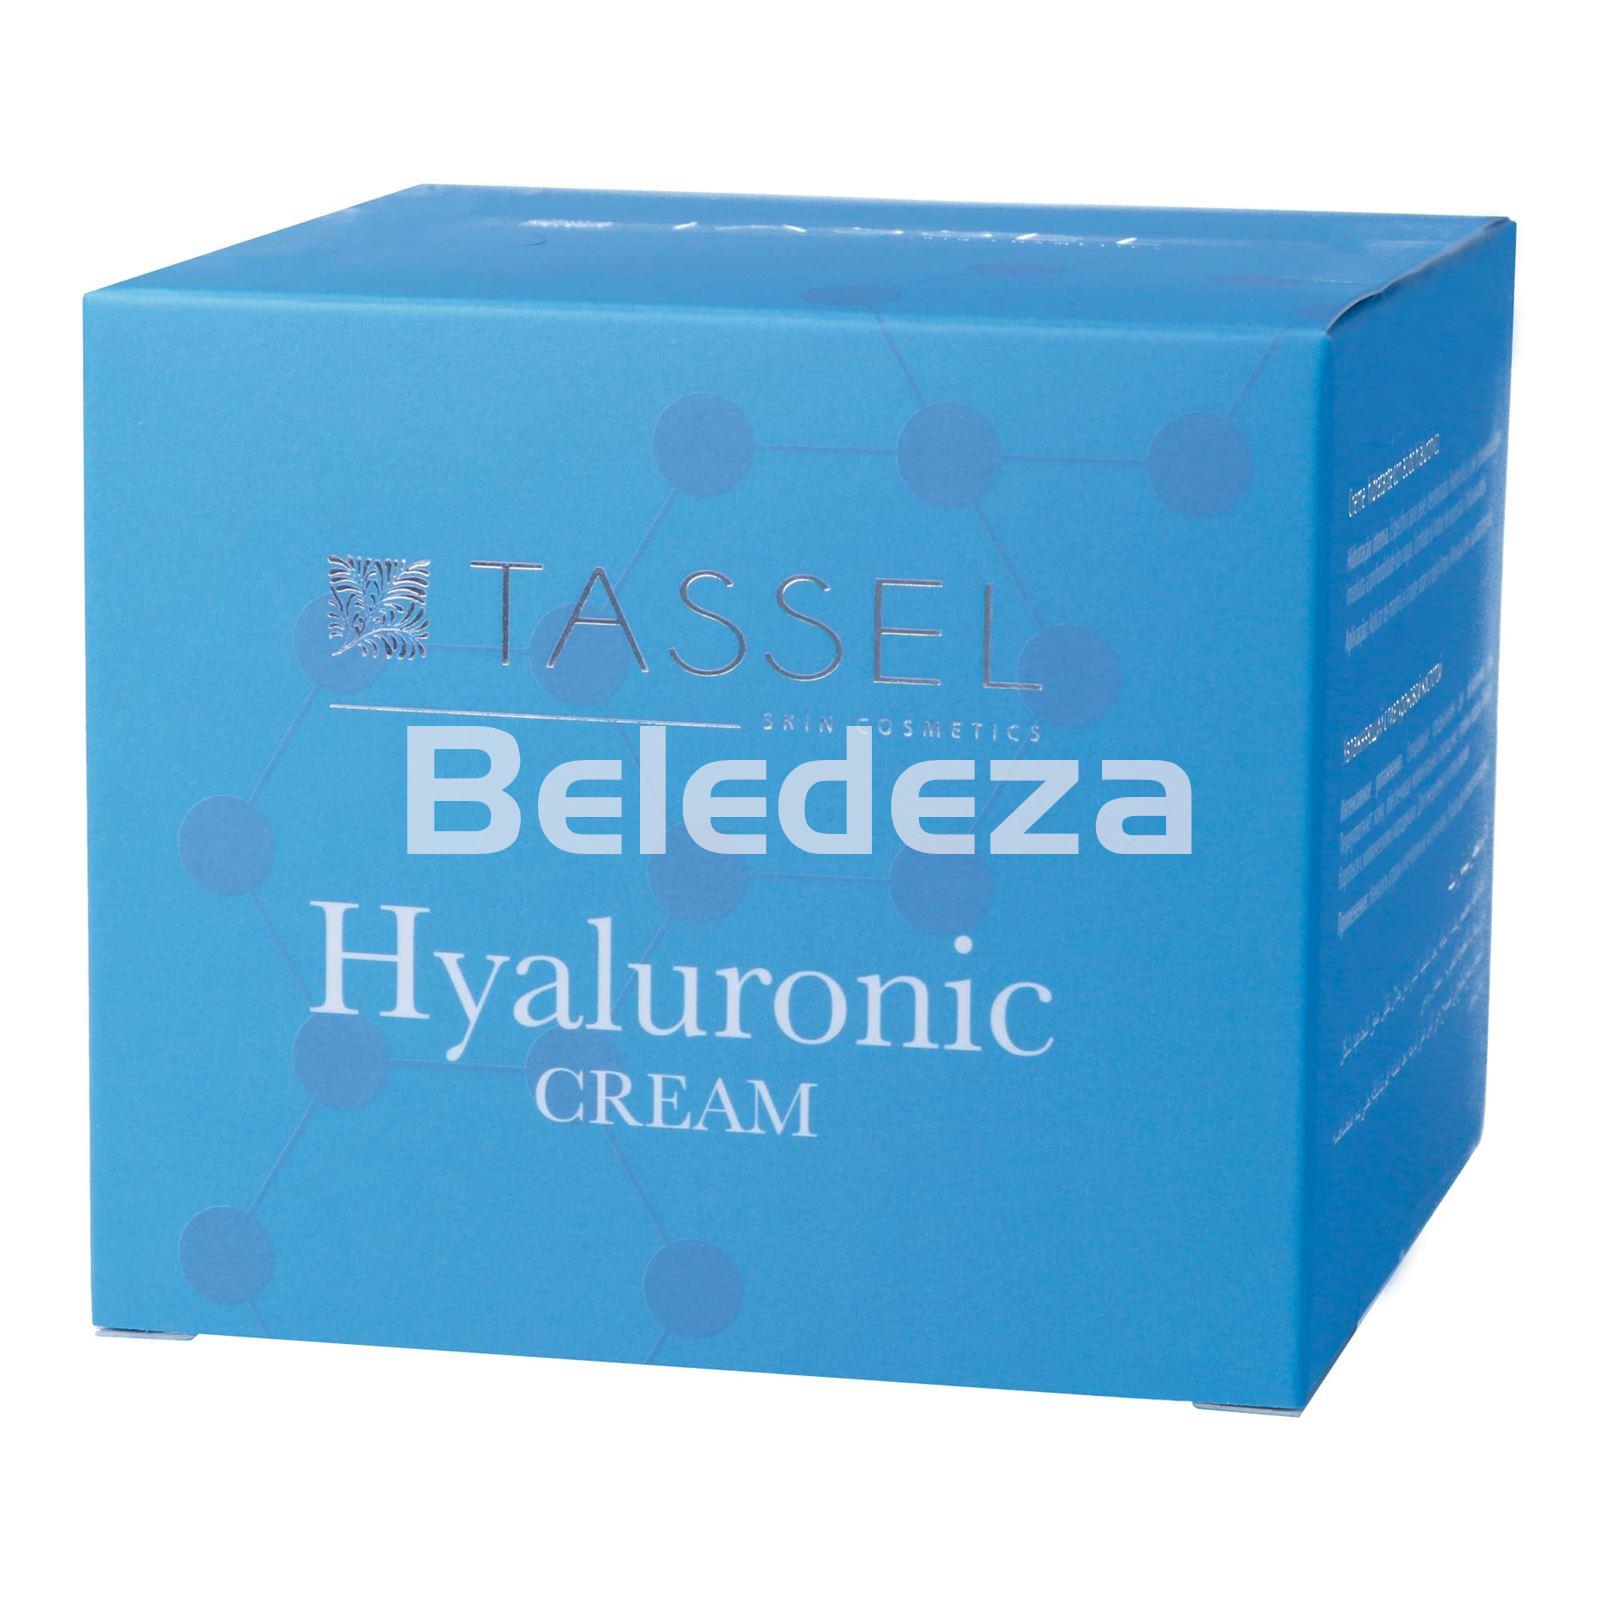 HYALURONIC CREAM Crema Hidratante con Ácido Hialuronico Tassel - Imagen 1